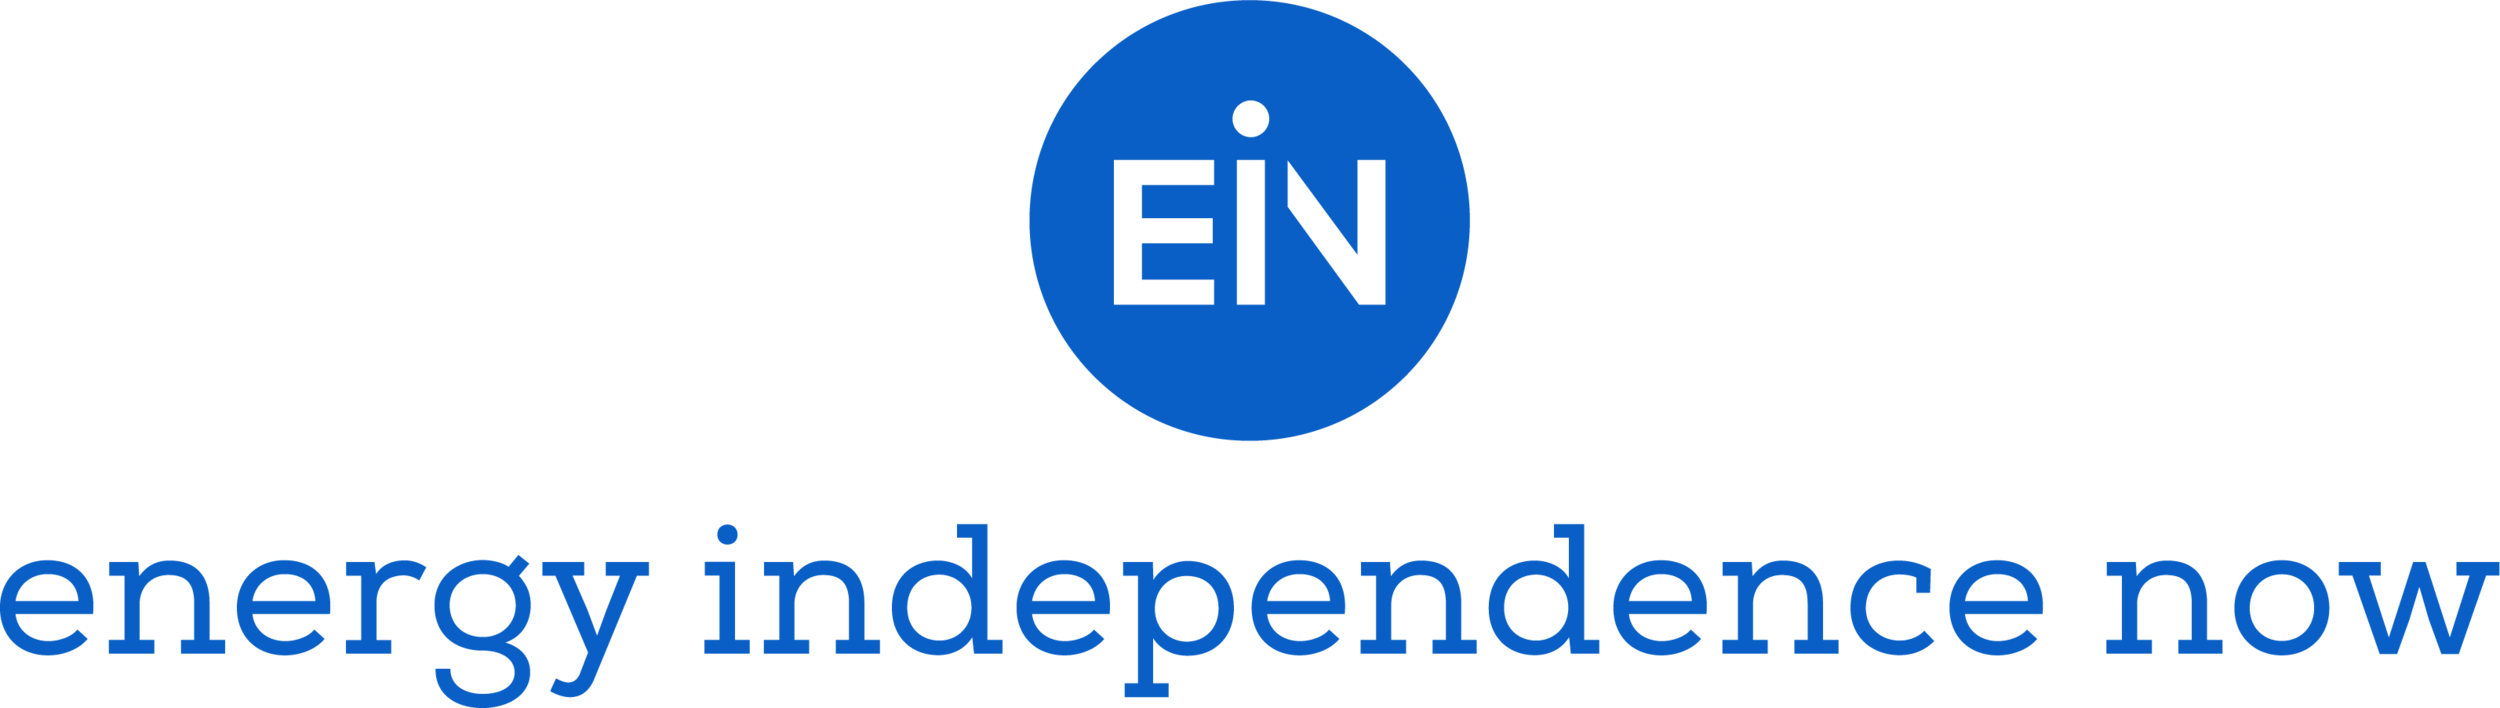 EIN logo.png